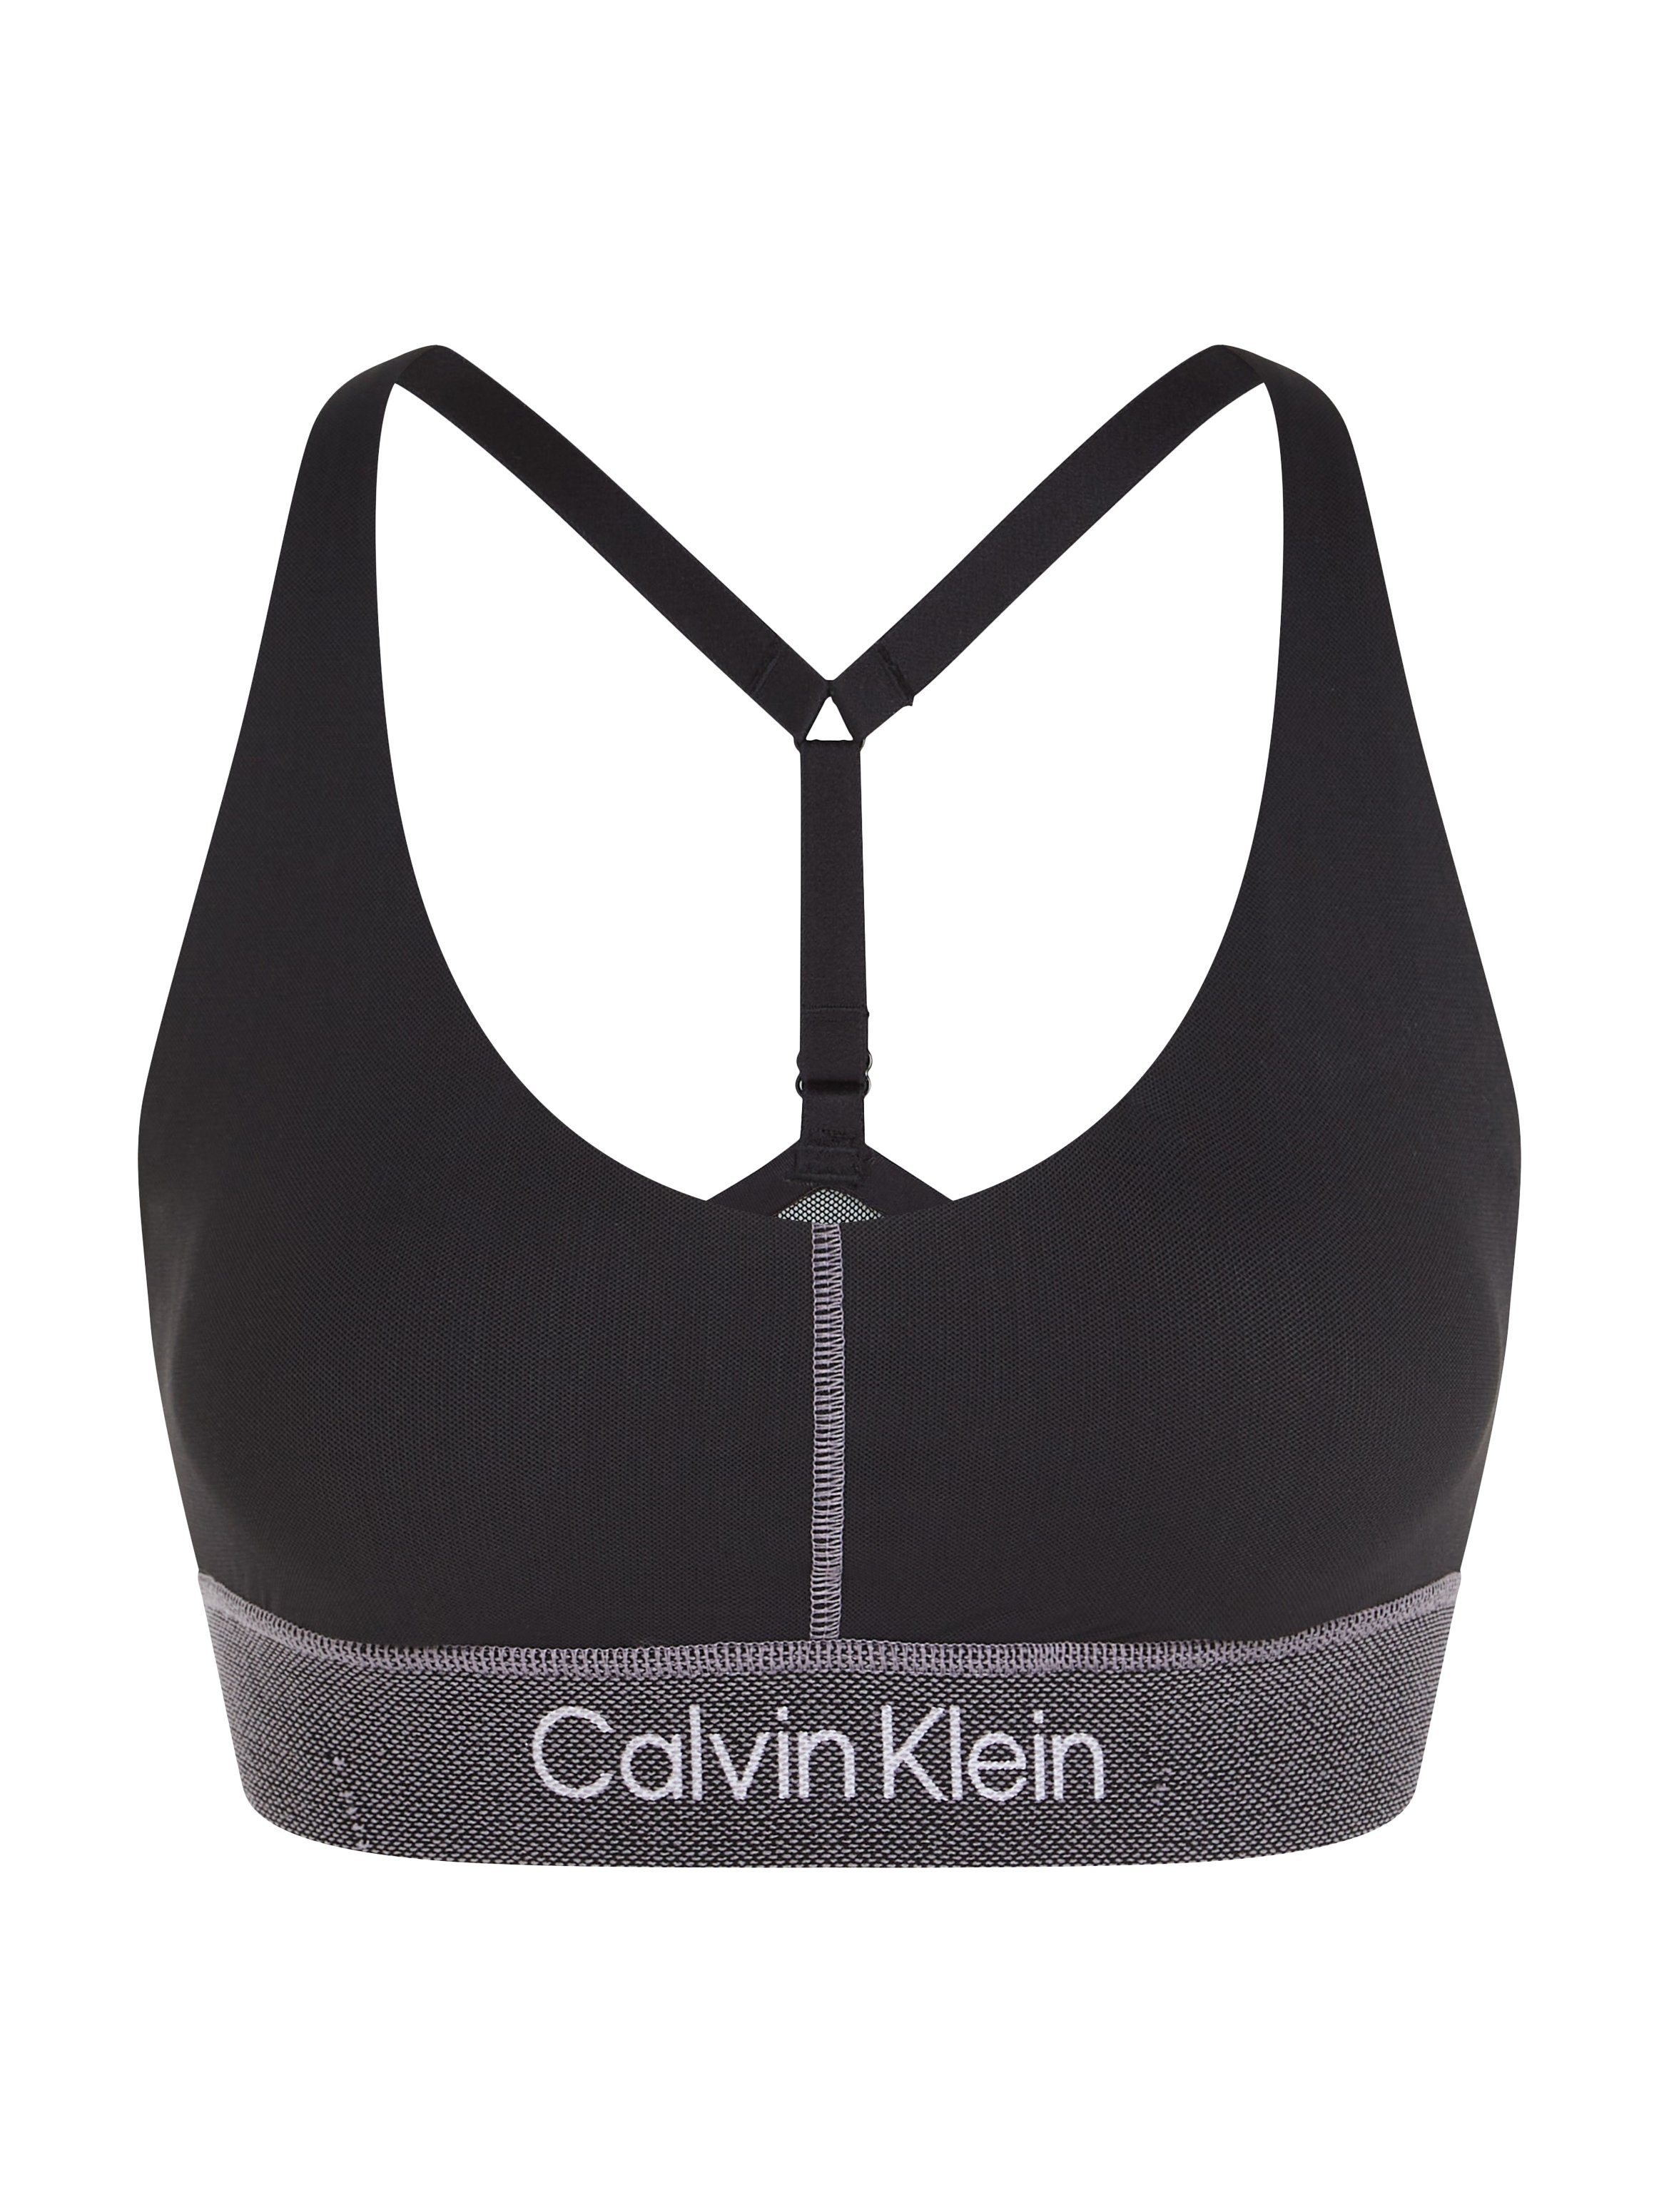 Calvin Klein Performance Sportbustier - bestellen Support Bra bij Sports | OTTO High WO